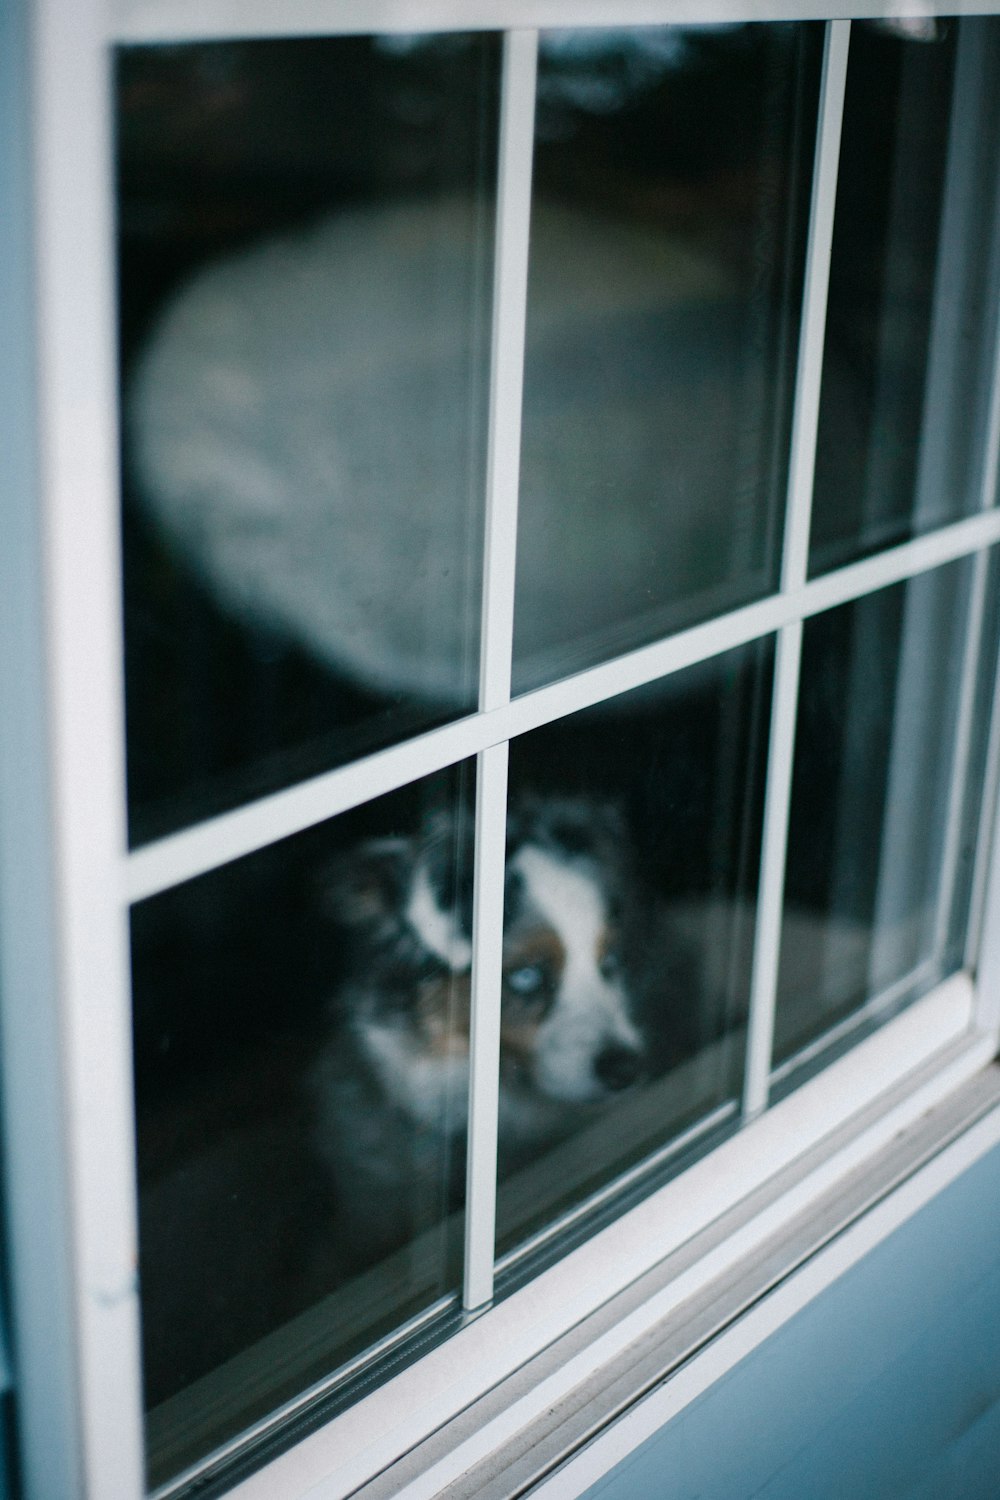 cane a pelo corto in bianco e nero sulla finestra